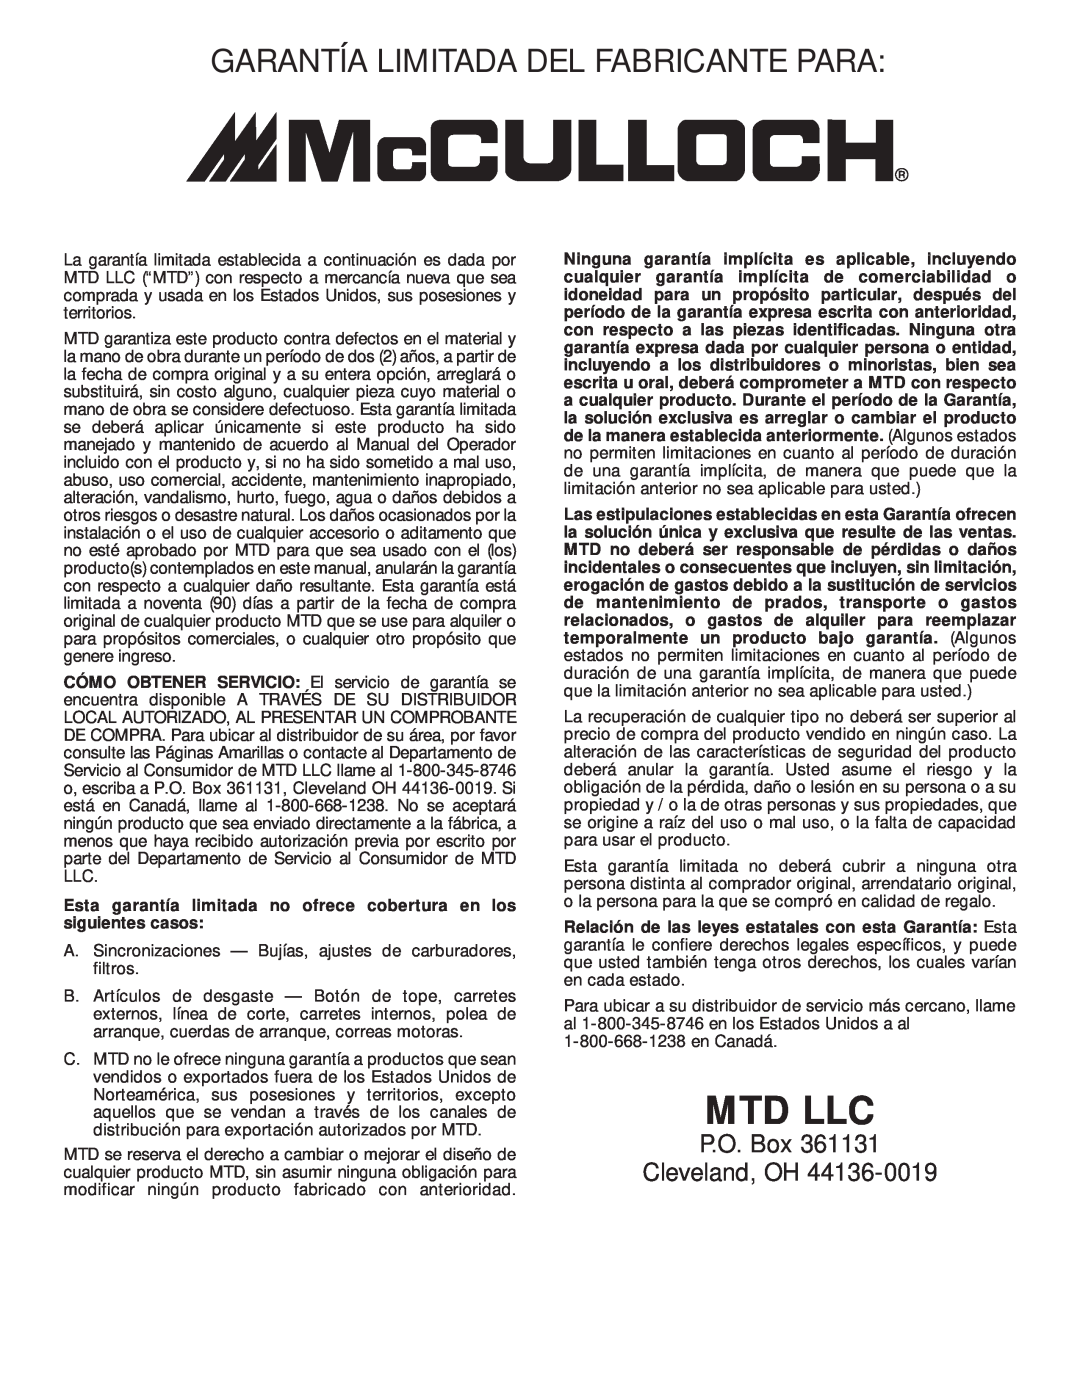 MTD MT700 manual Garantía Limitada Del Fabricante Para, Esta garantía limitada no ofrece cobertura en los siguientes casos 